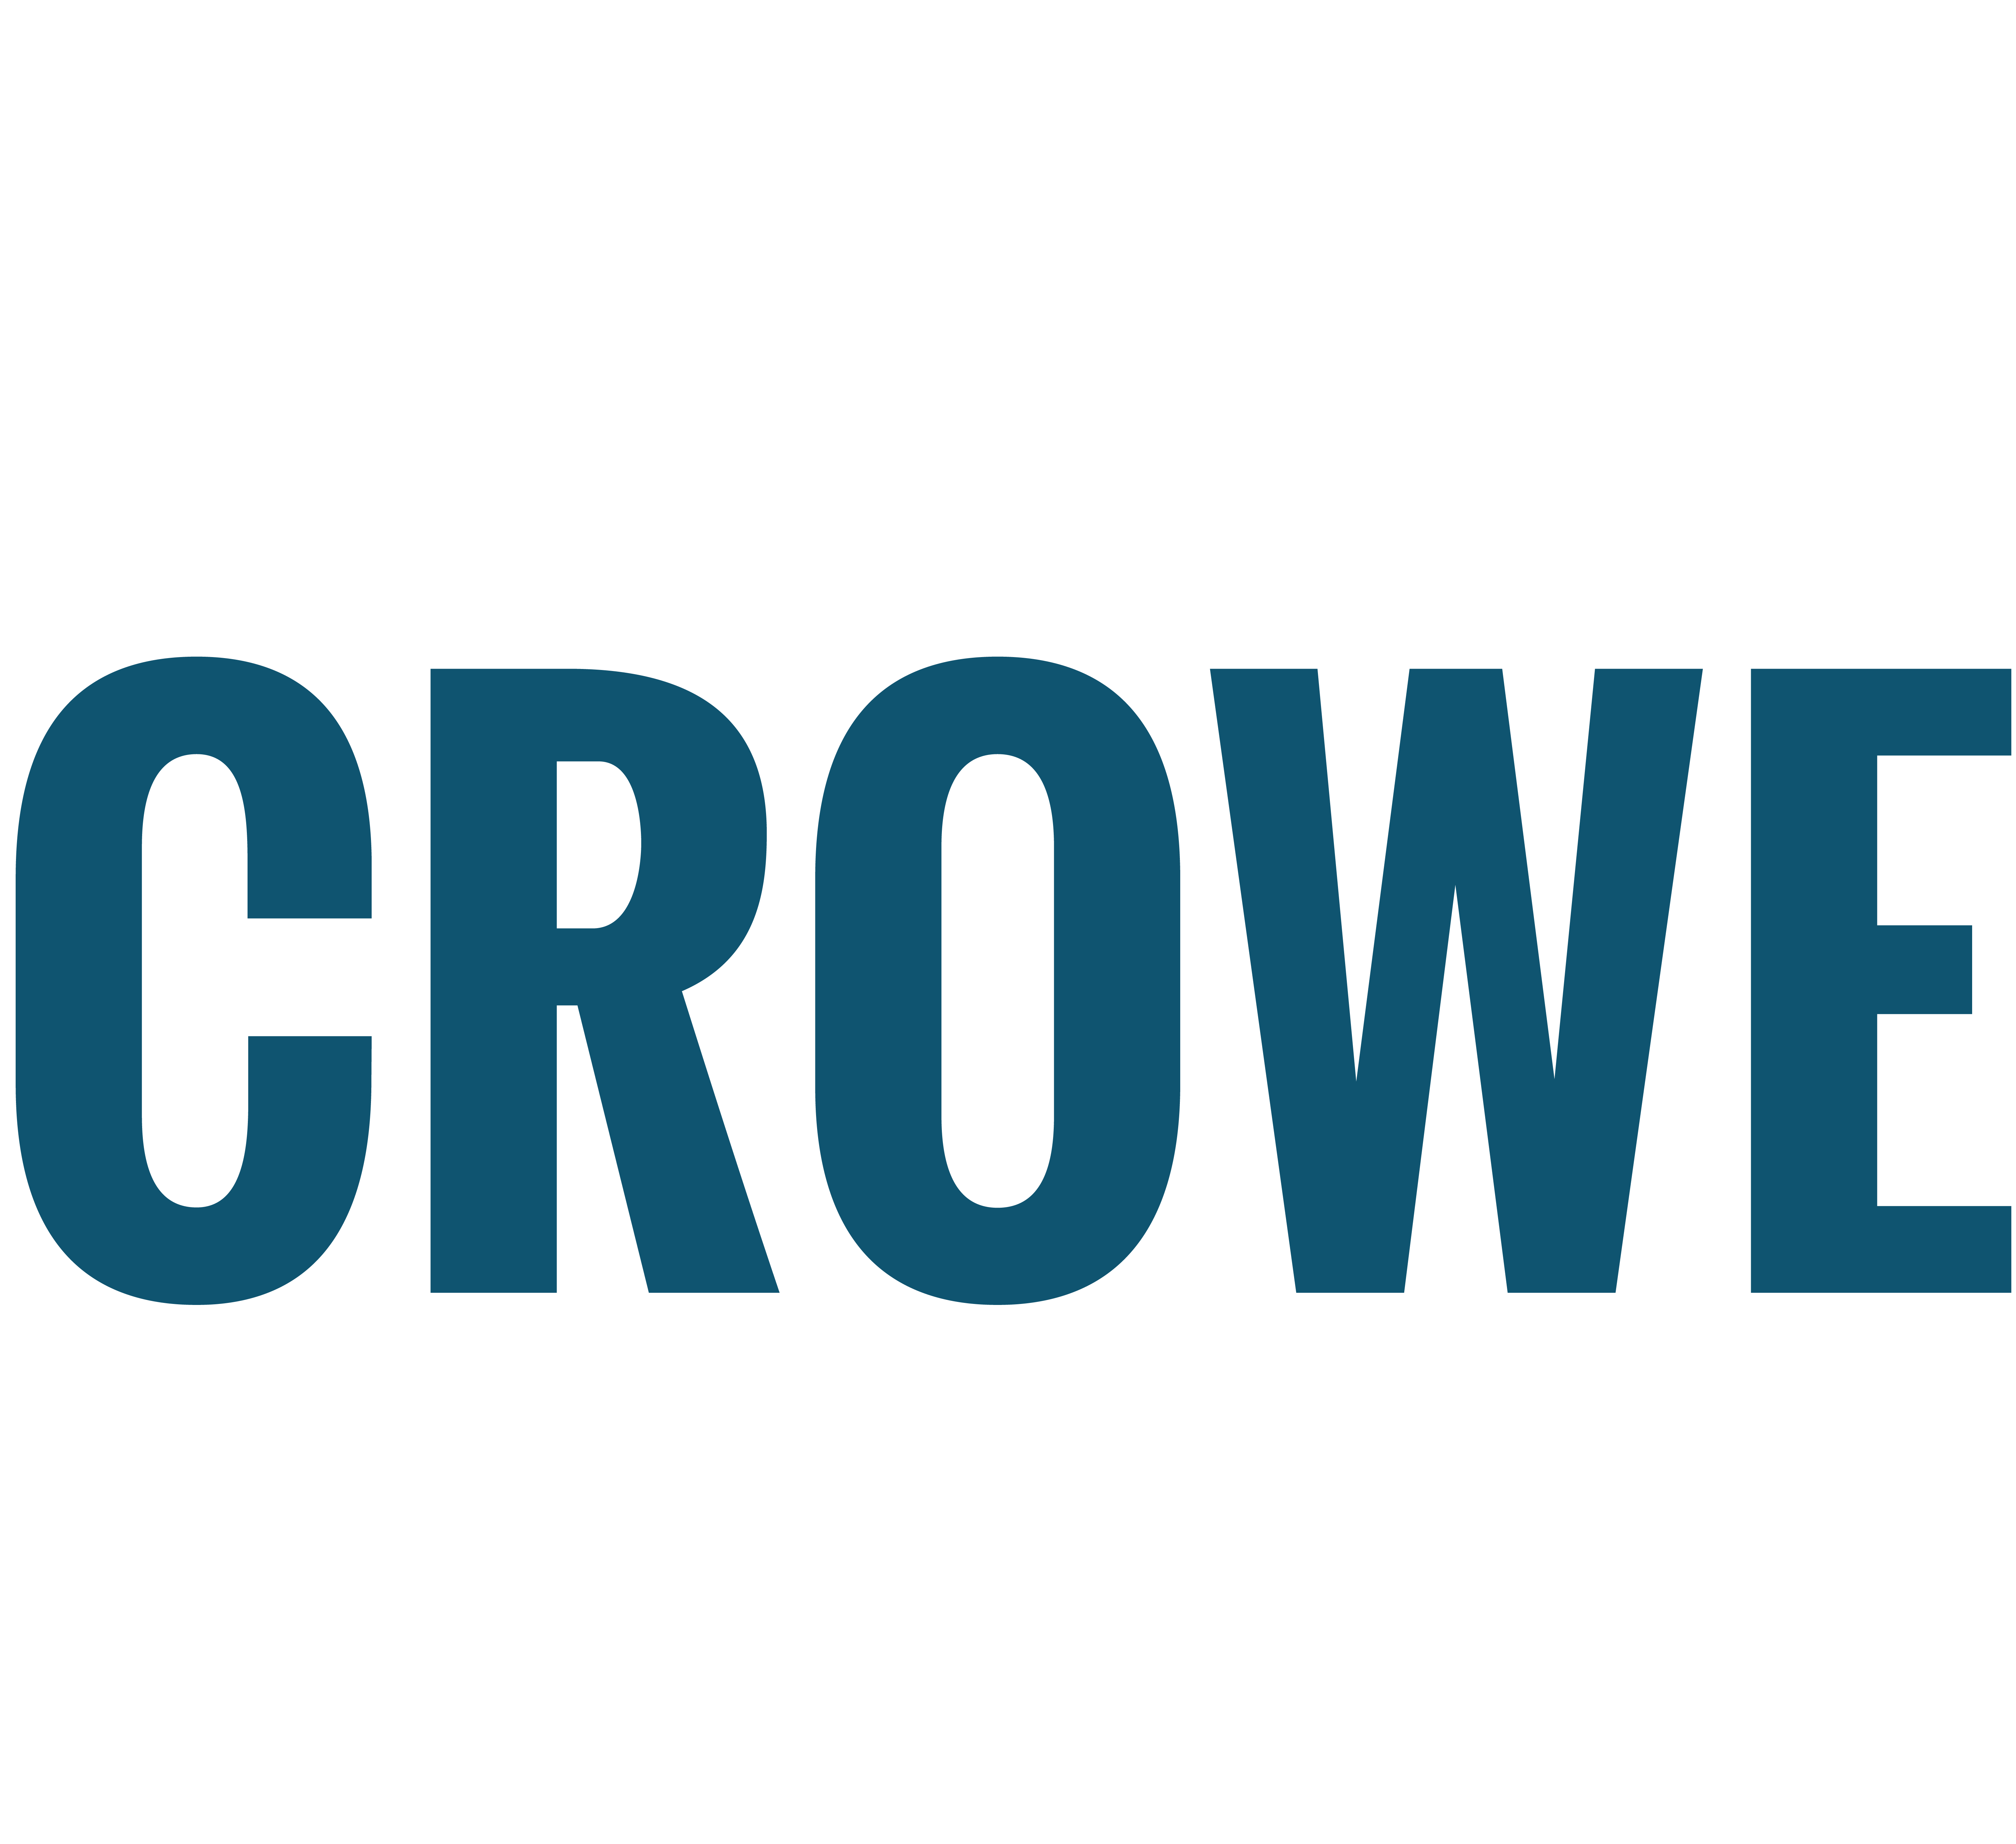 Allison Crowe and Band